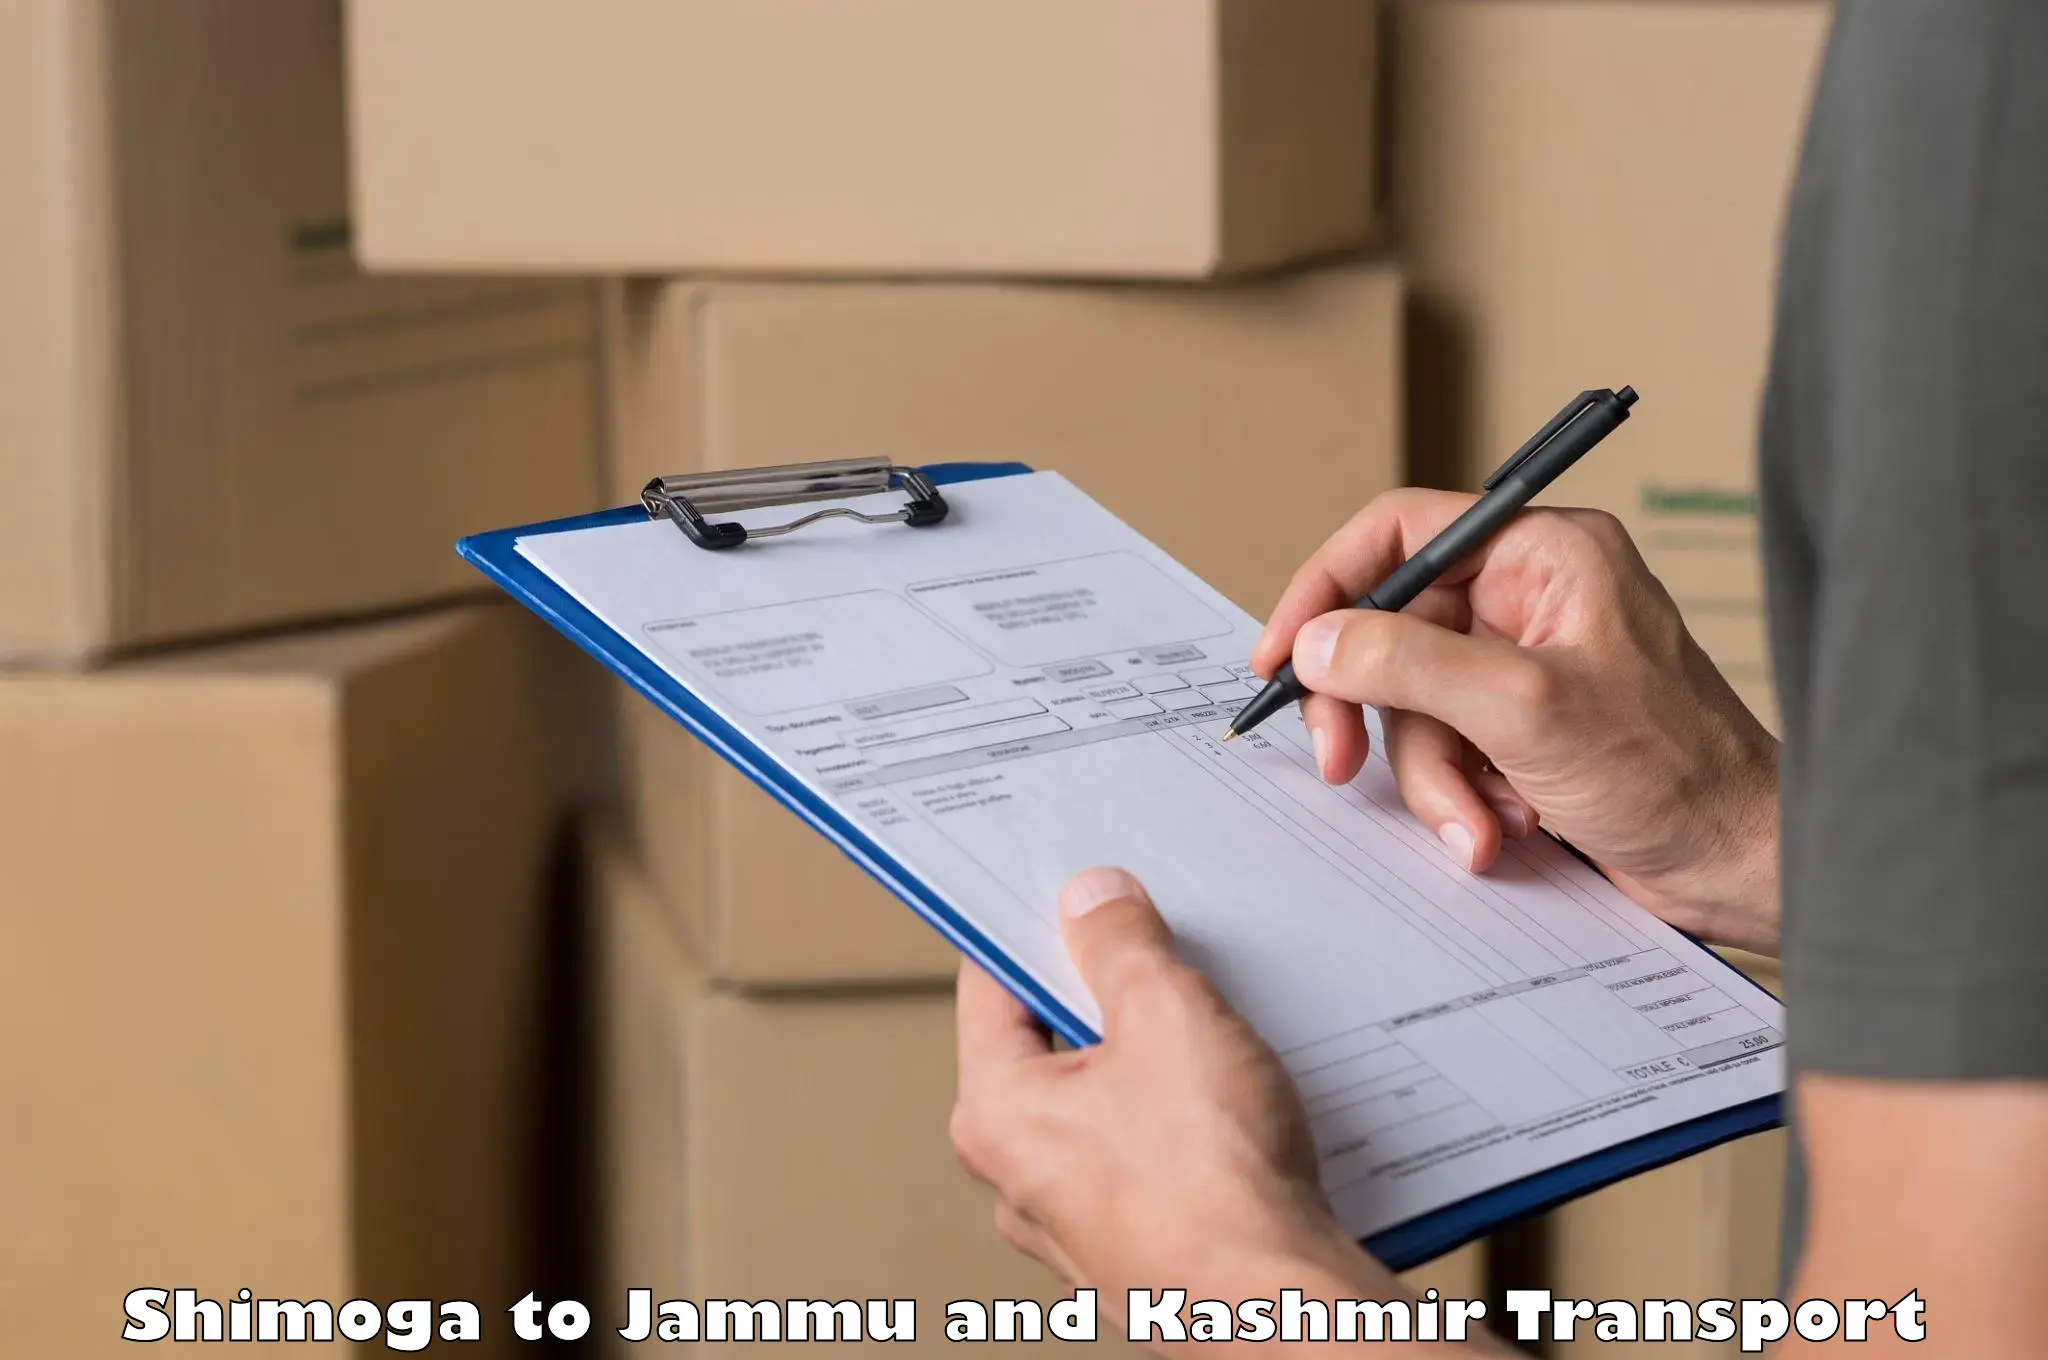 Nearby transport service Shimoga to Jammu